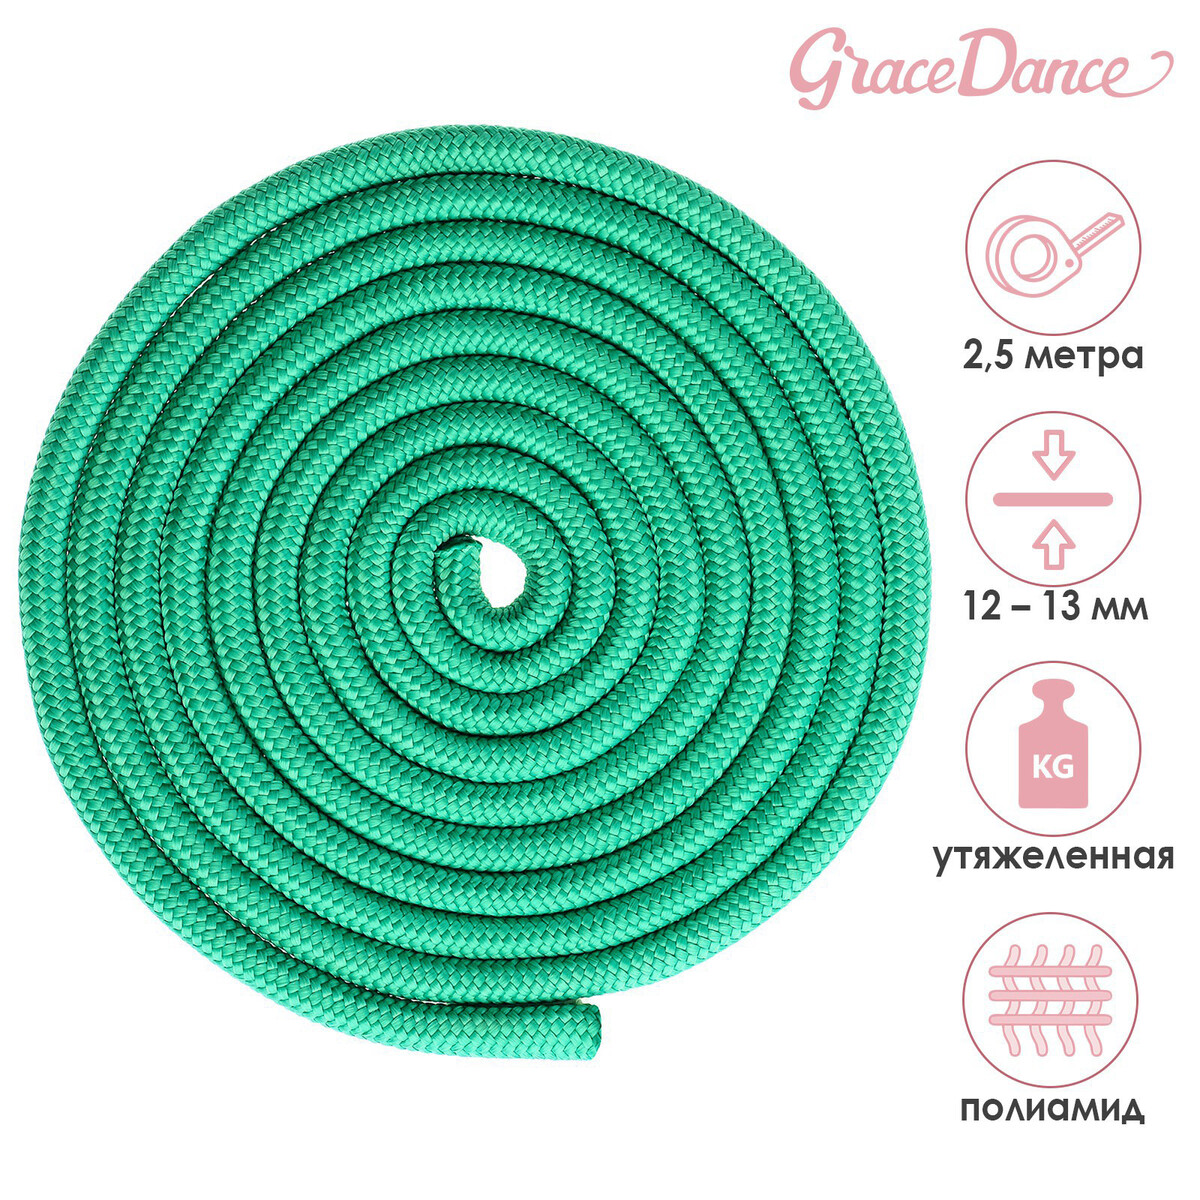 Скакалка для художественной гимнастики утяжеленная grace dance, 2,5 м, цвет зеленый скакалка гимнастическая grace dance 3 м зеленый